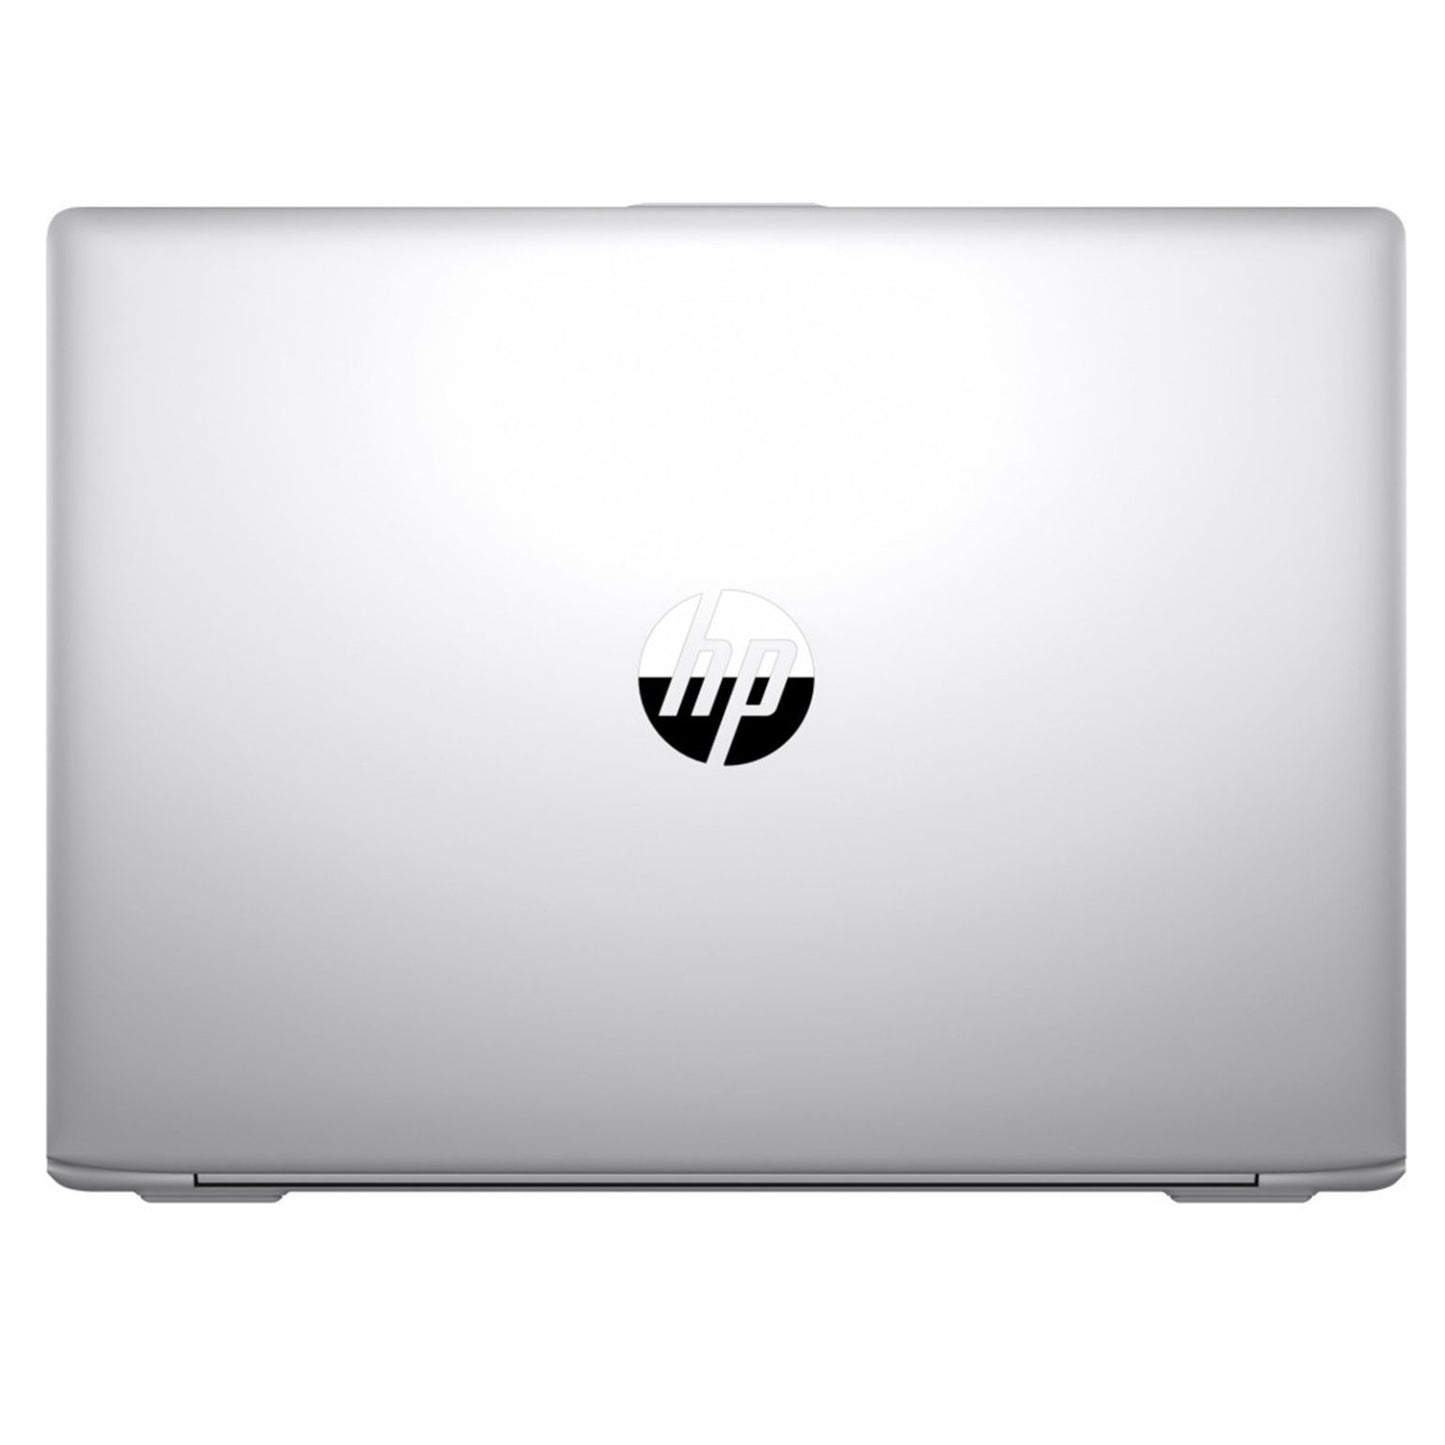 HP Probook 430 G5 13.3 I5 8250U 8GB 256GB Win 10 Pro refurbished